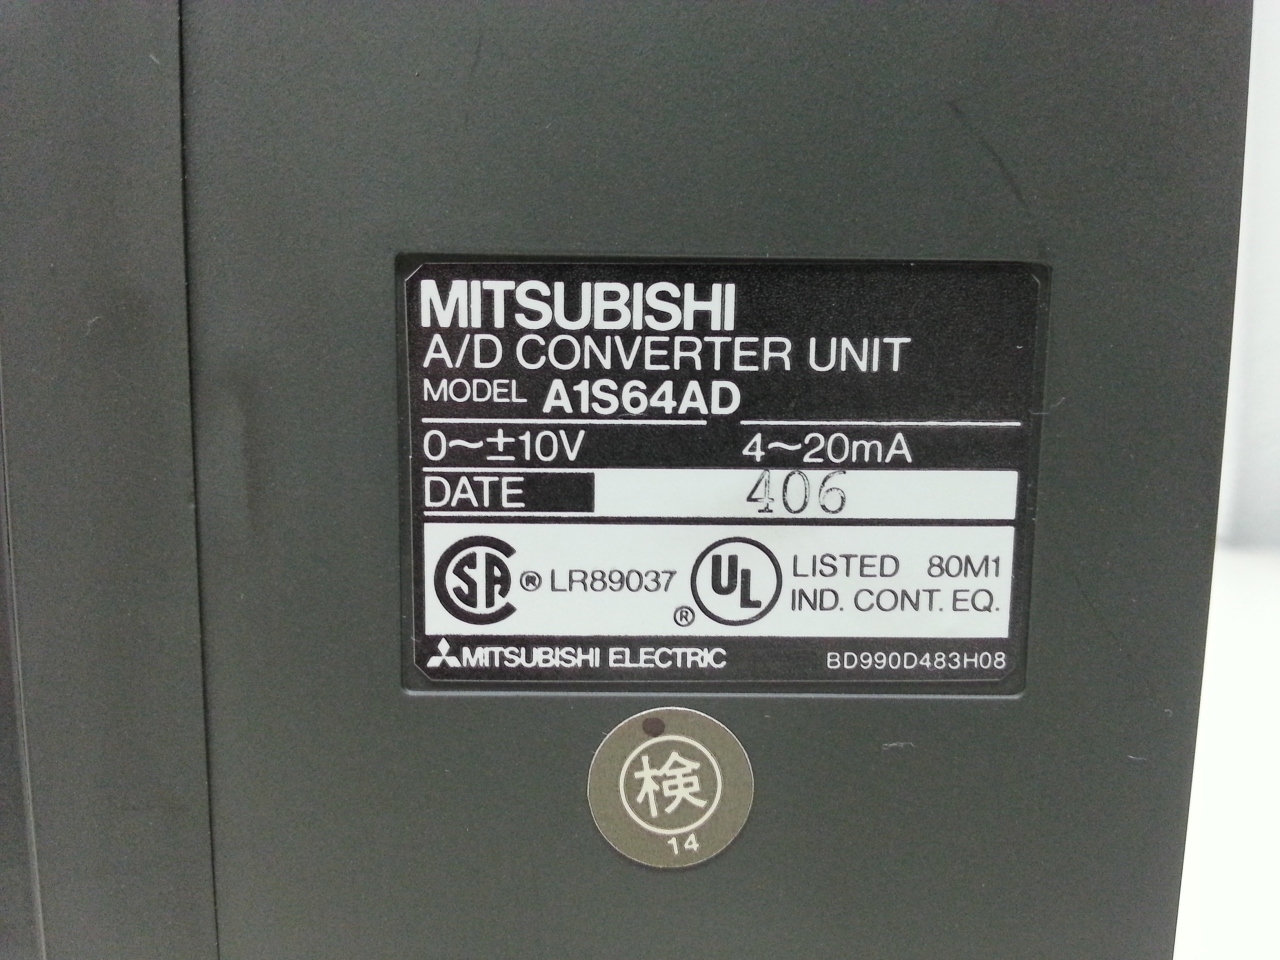 A1S64AD Melsec Mitsubishi AD converter unit